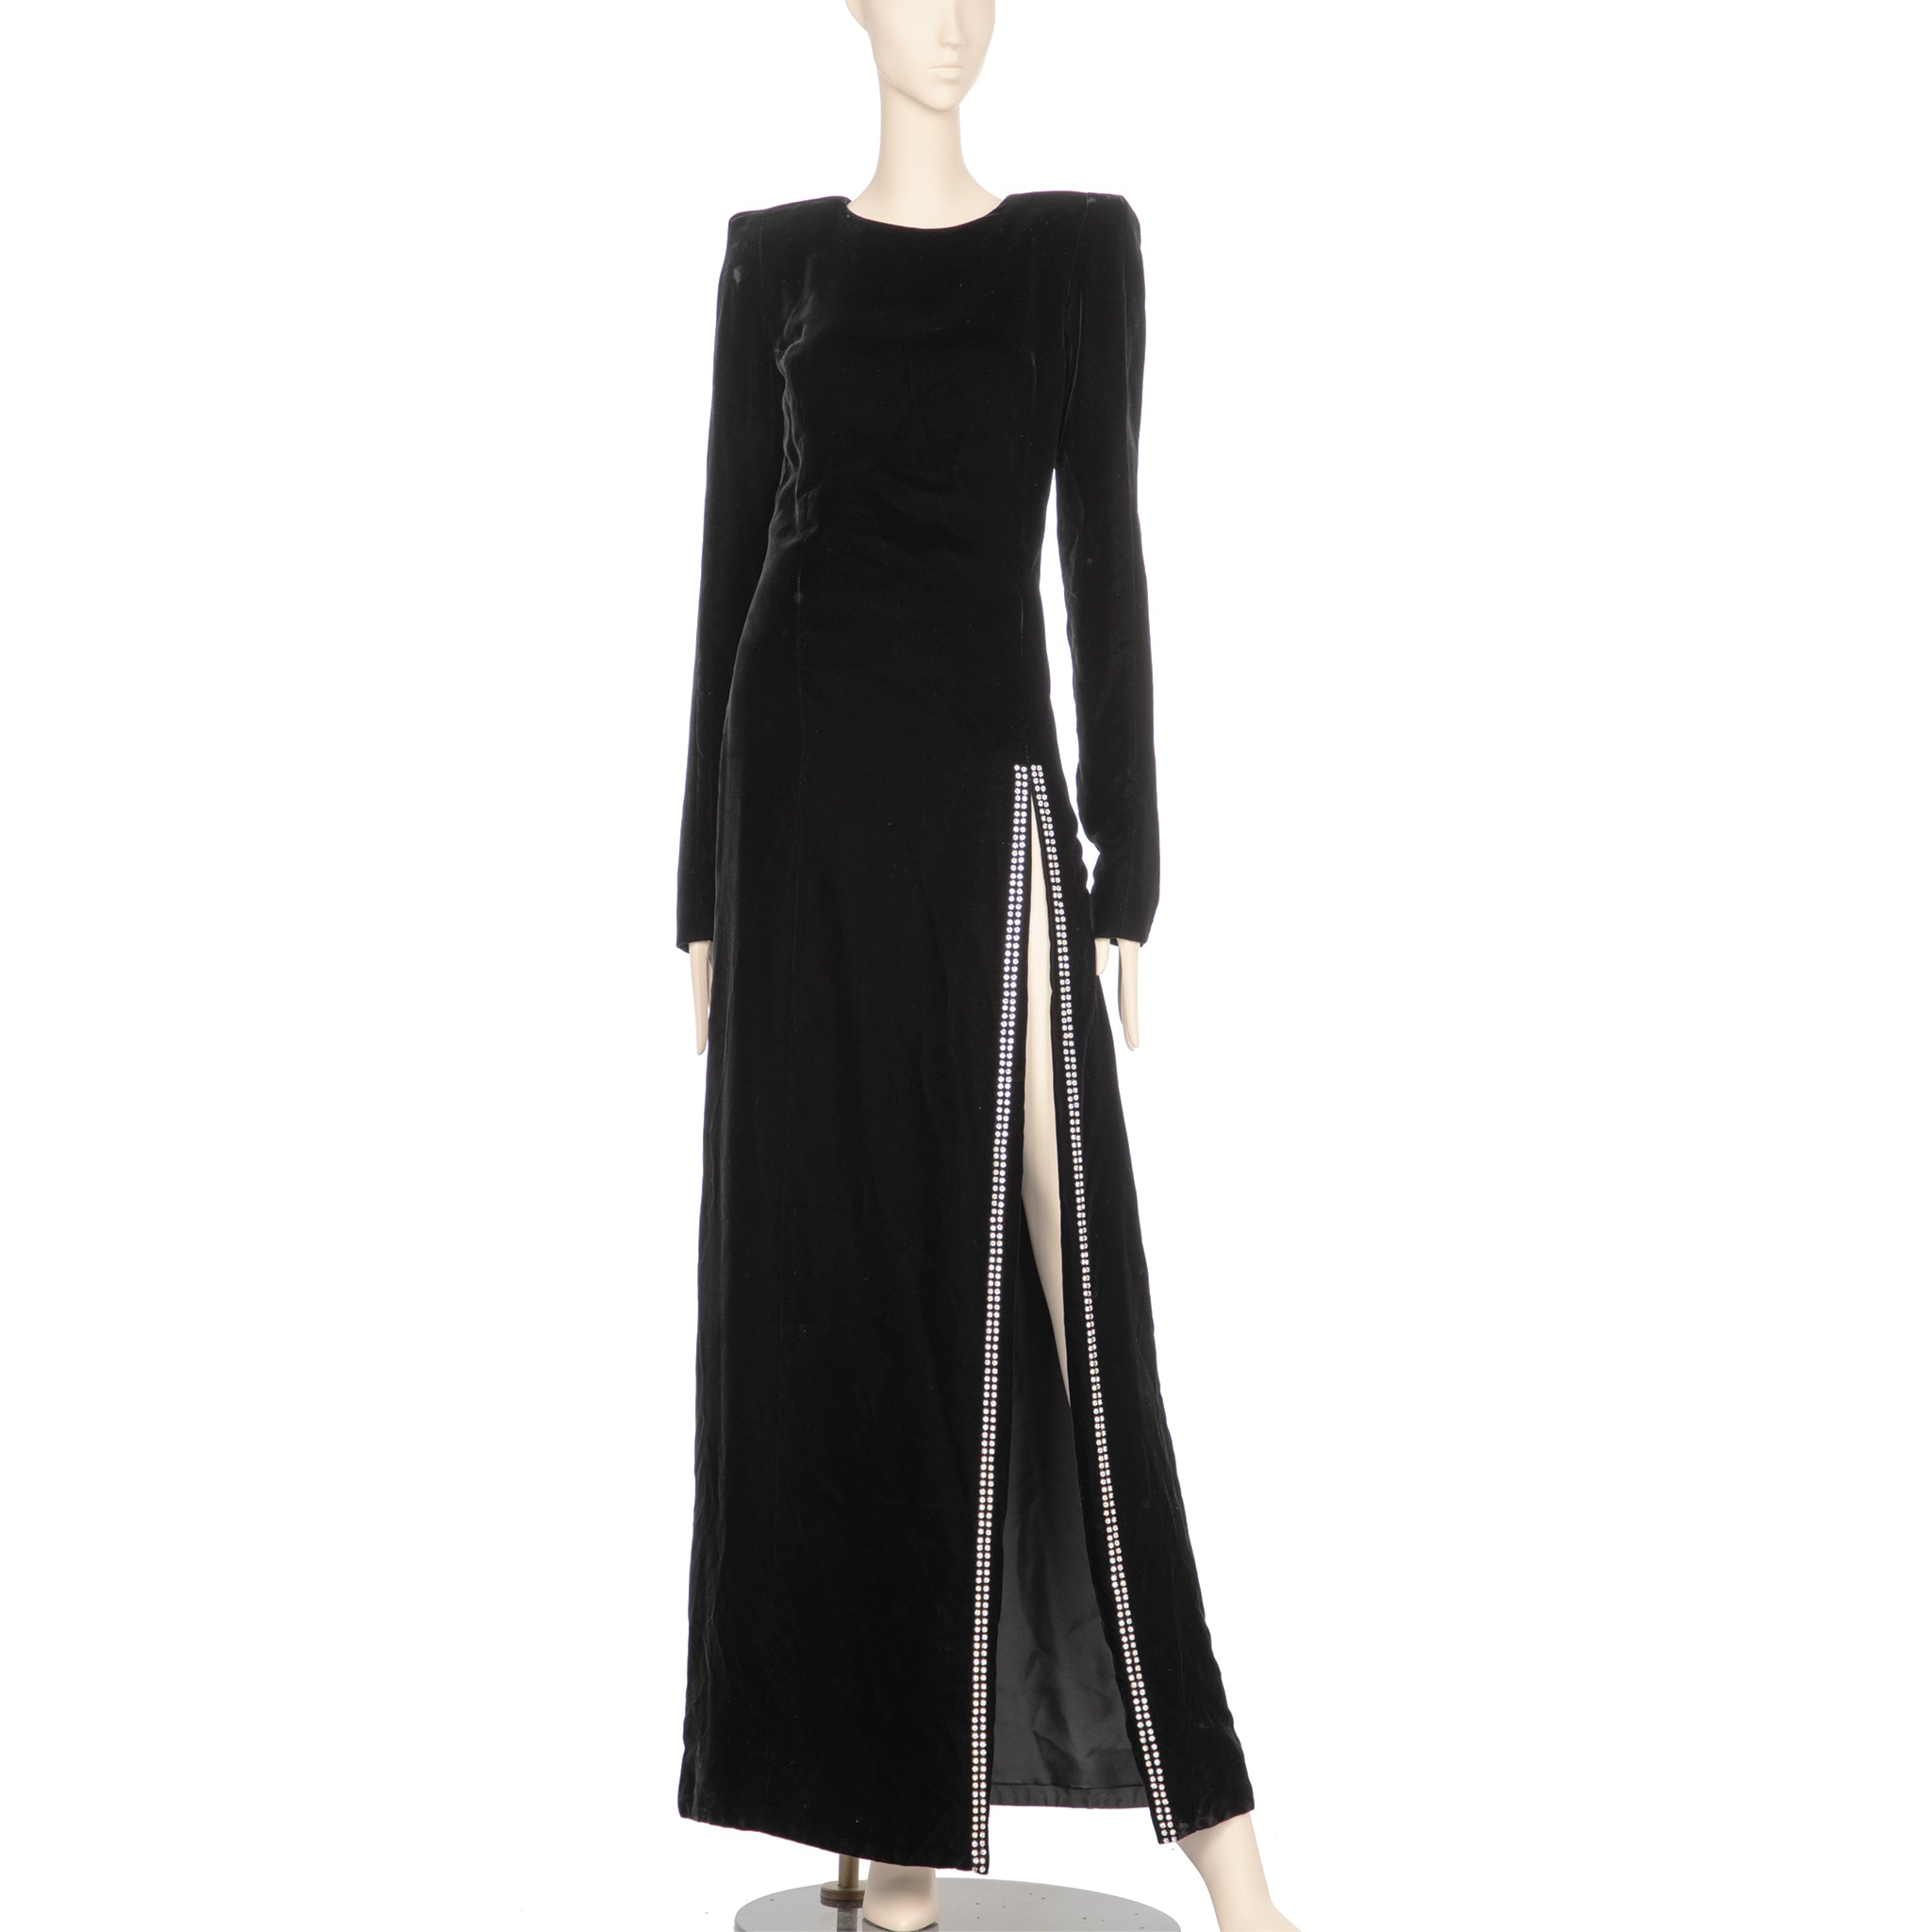 Saint Laurent Ankle Length Black Velvet Dress With Rhinestones 36 FR